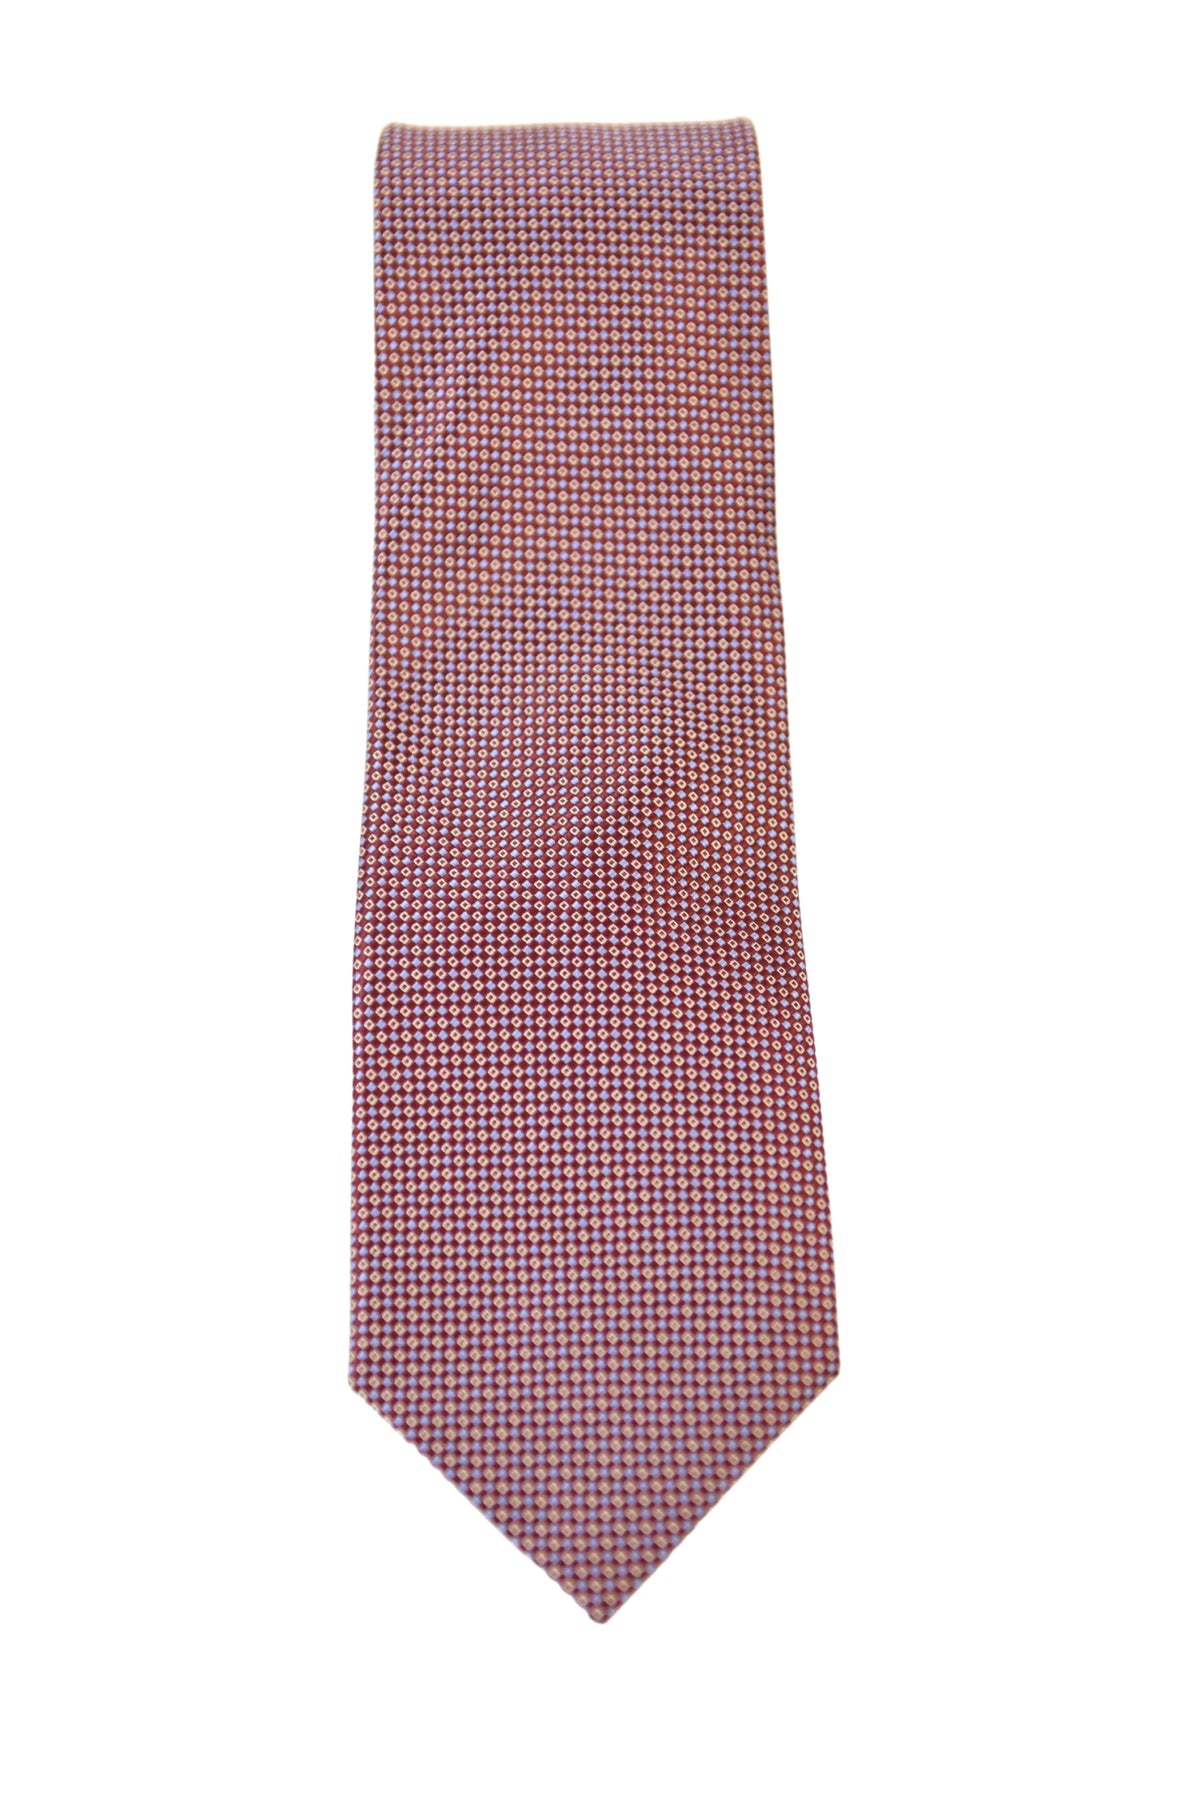 The Suit Depot Violet Dots Arthur Black Premium Silk Tie